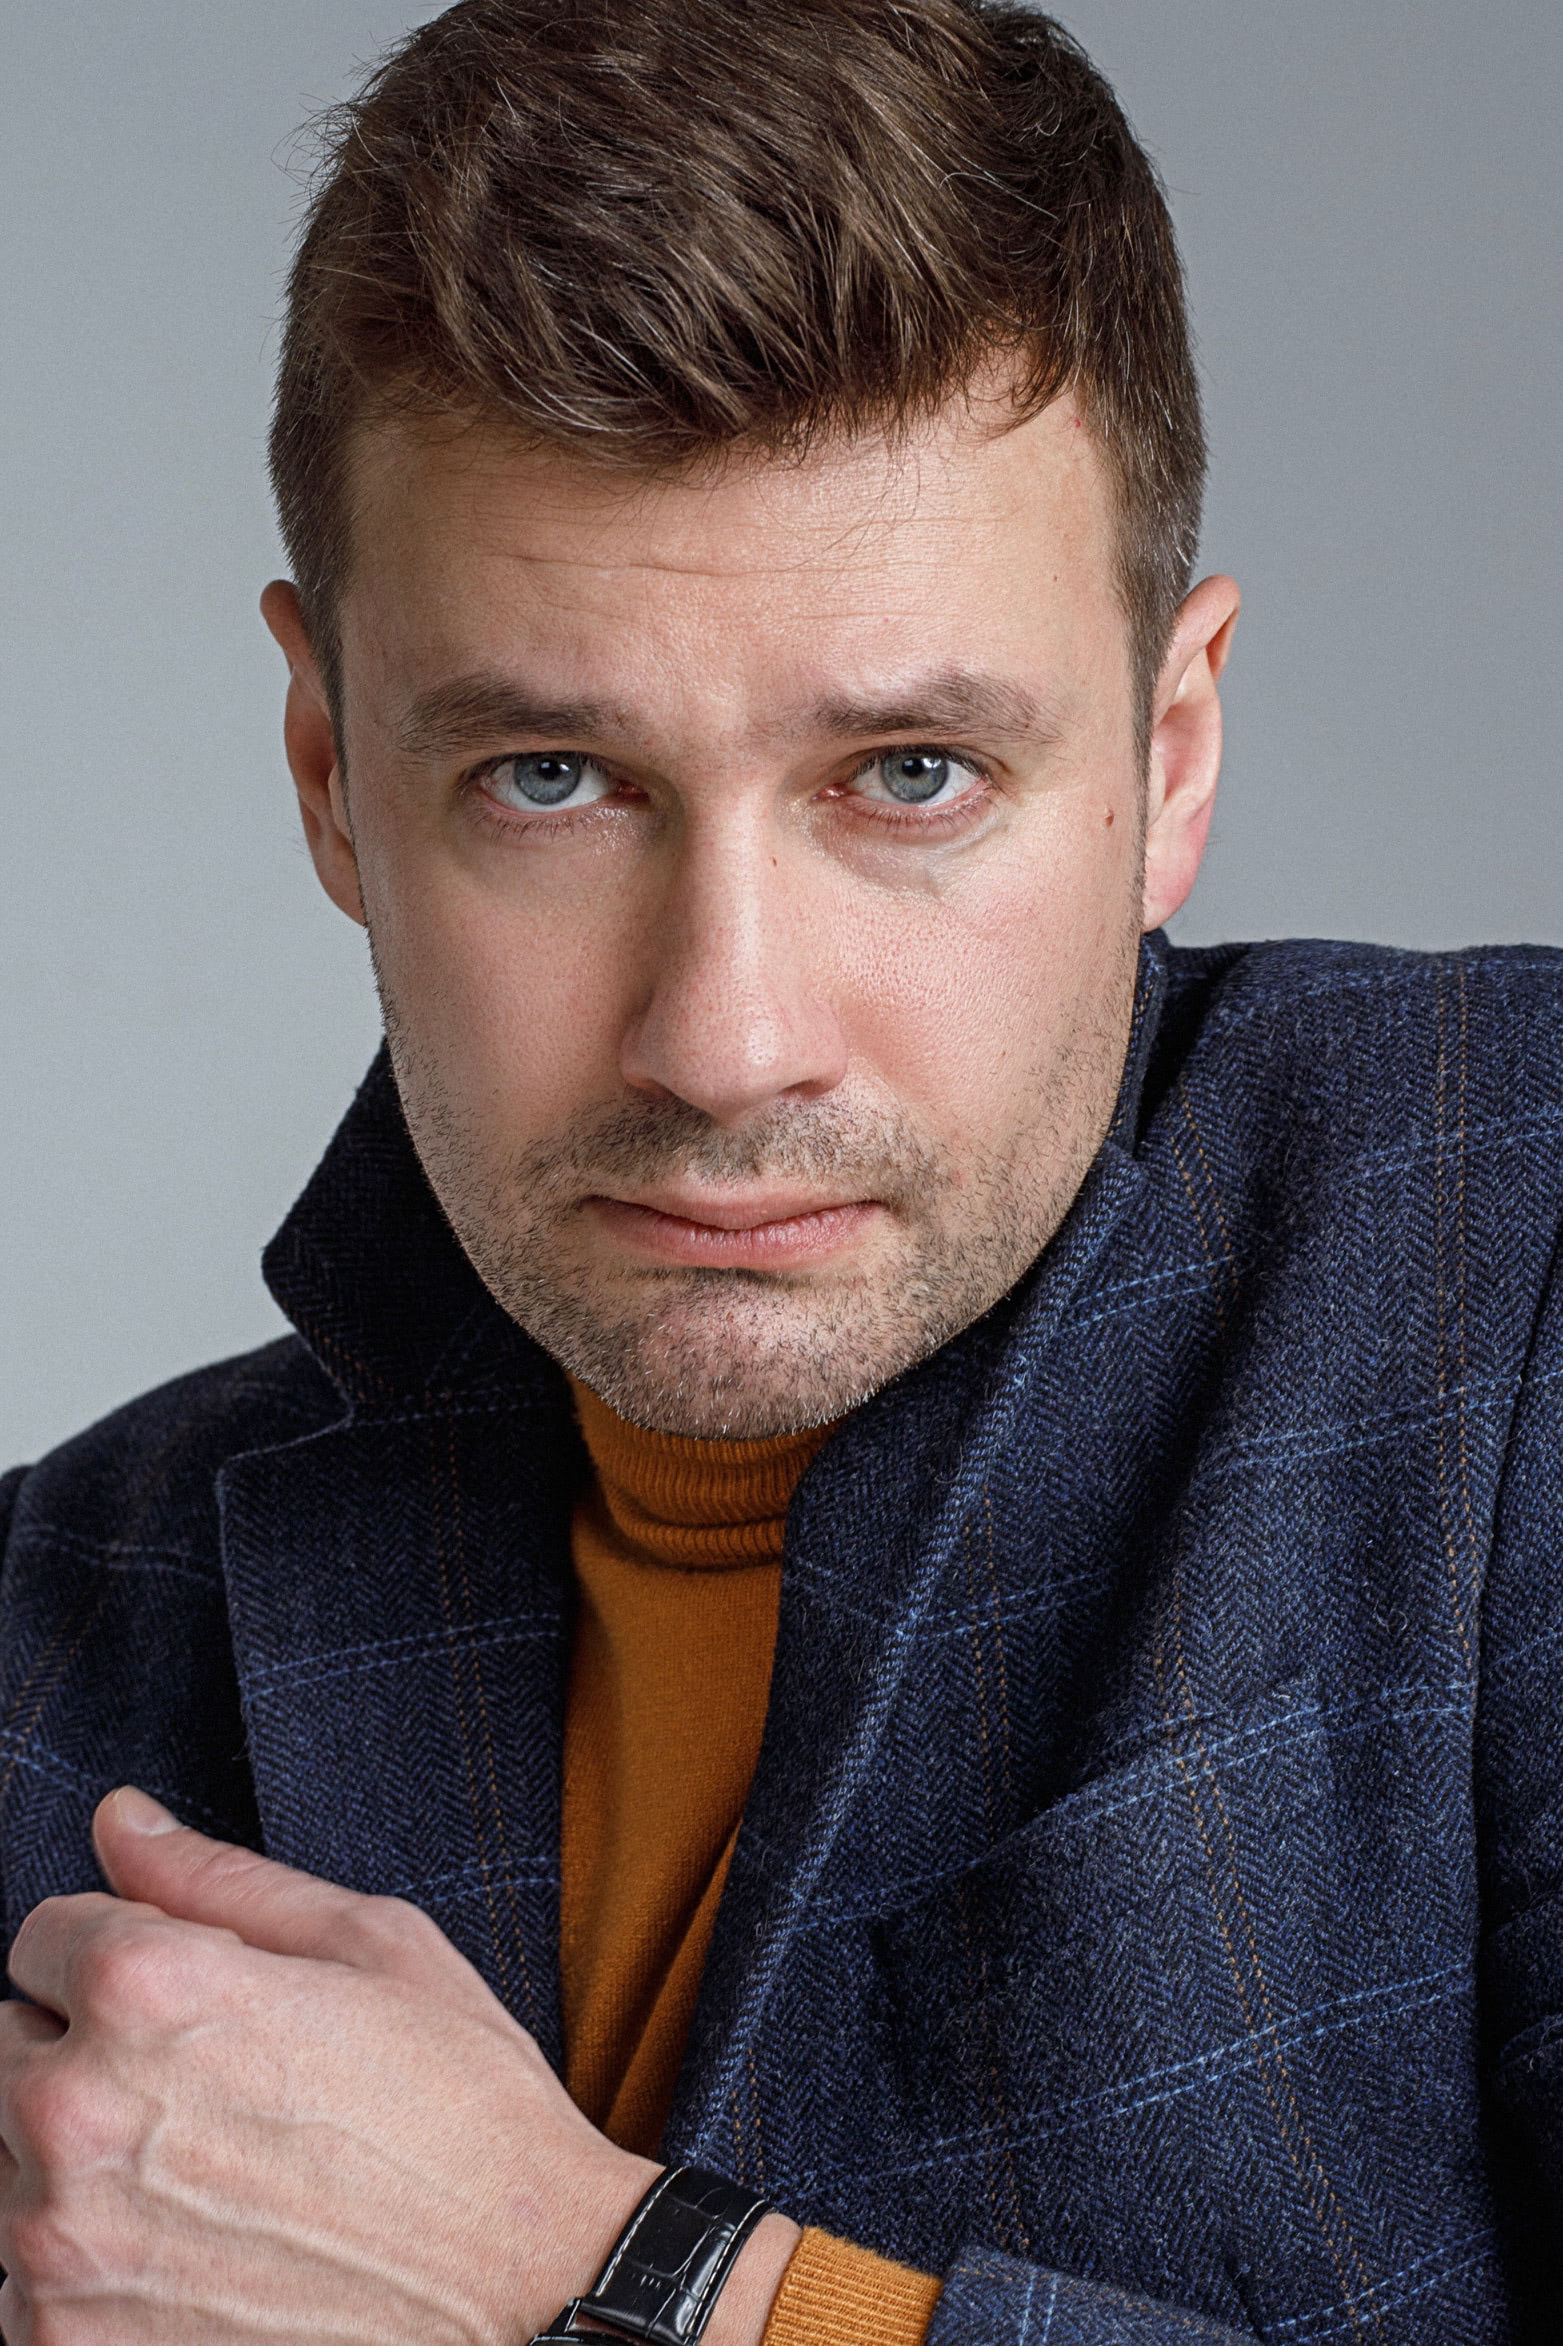 Владимир Колганов: биография актера, фильмография 2021, личная жизнь